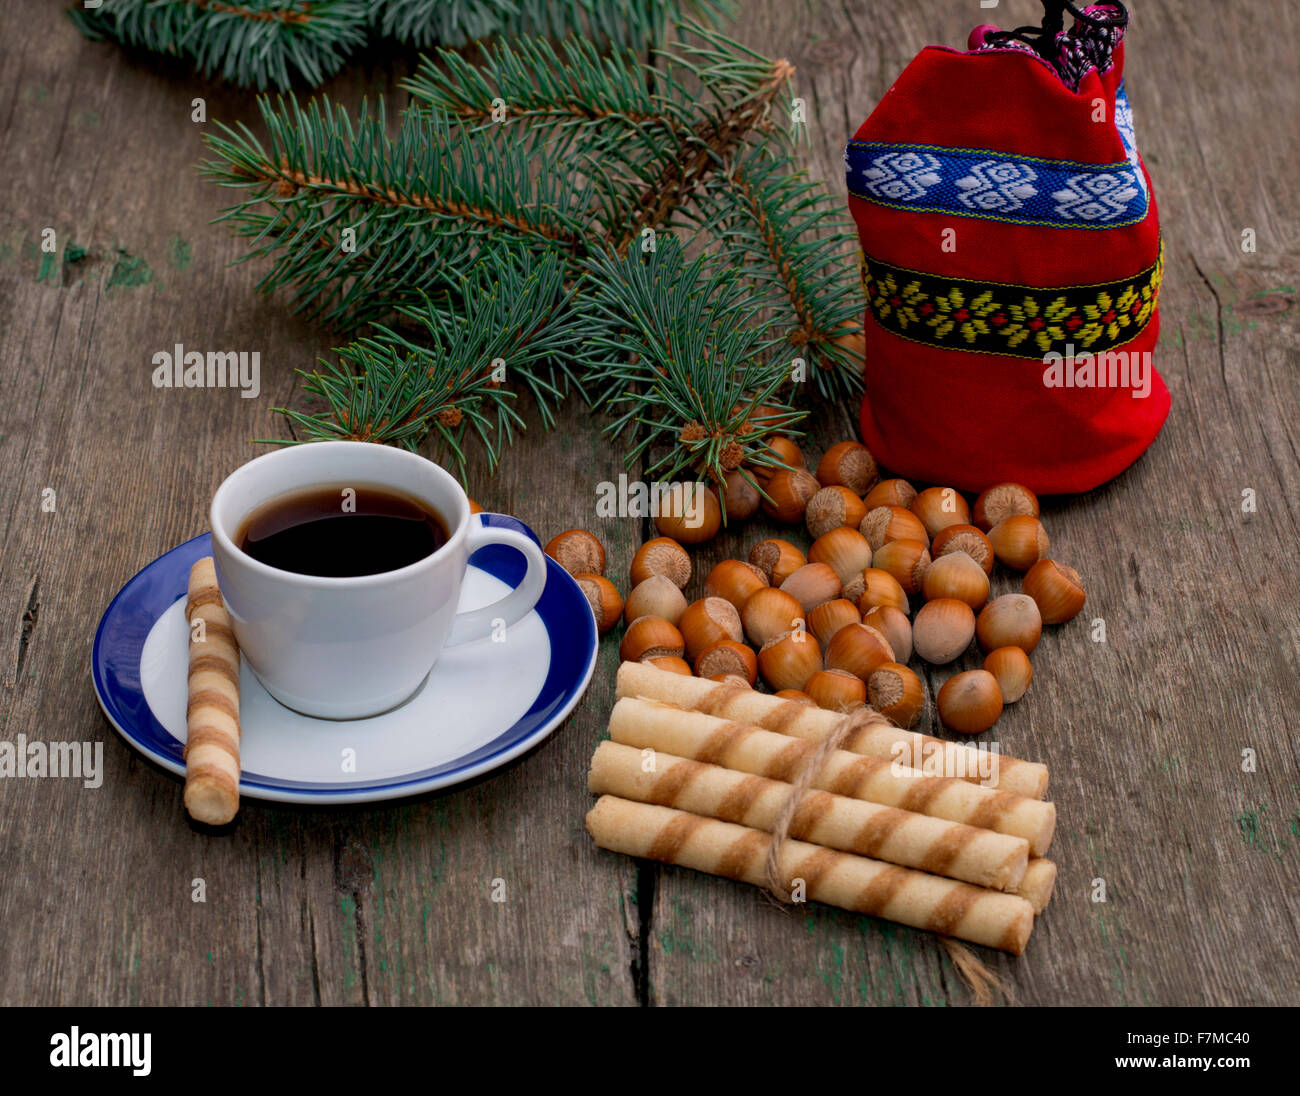 Sac cadeau, café, forêt nucules, reliant des cookies et sapin-tree branch Banque D'Images